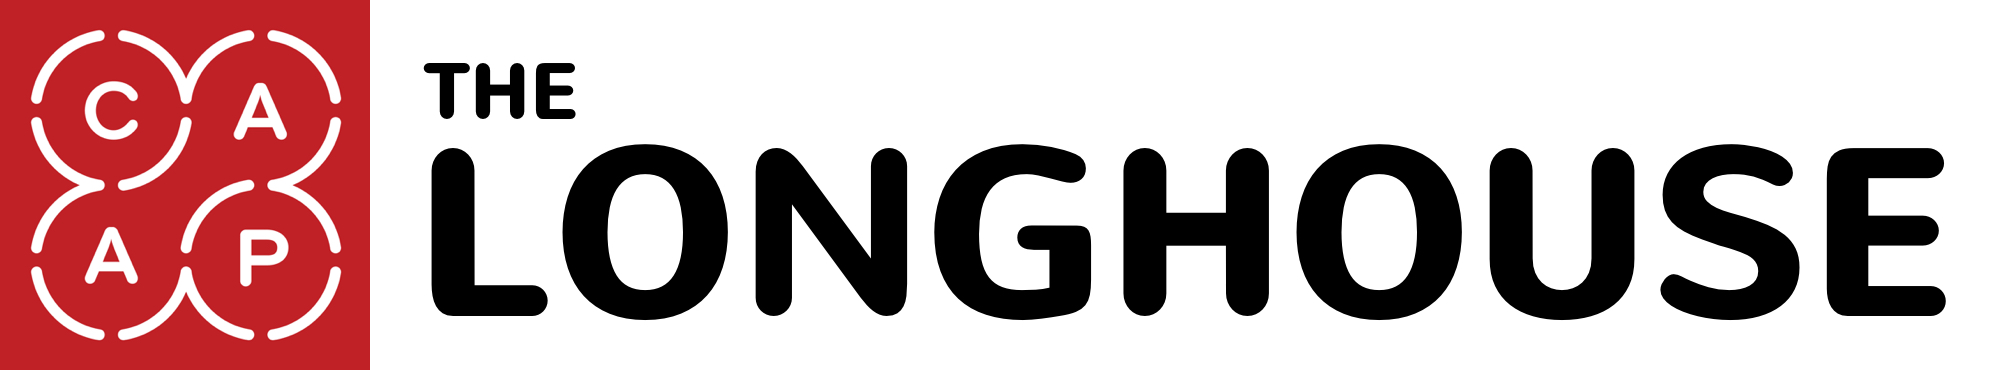 LONGHOUSE logo